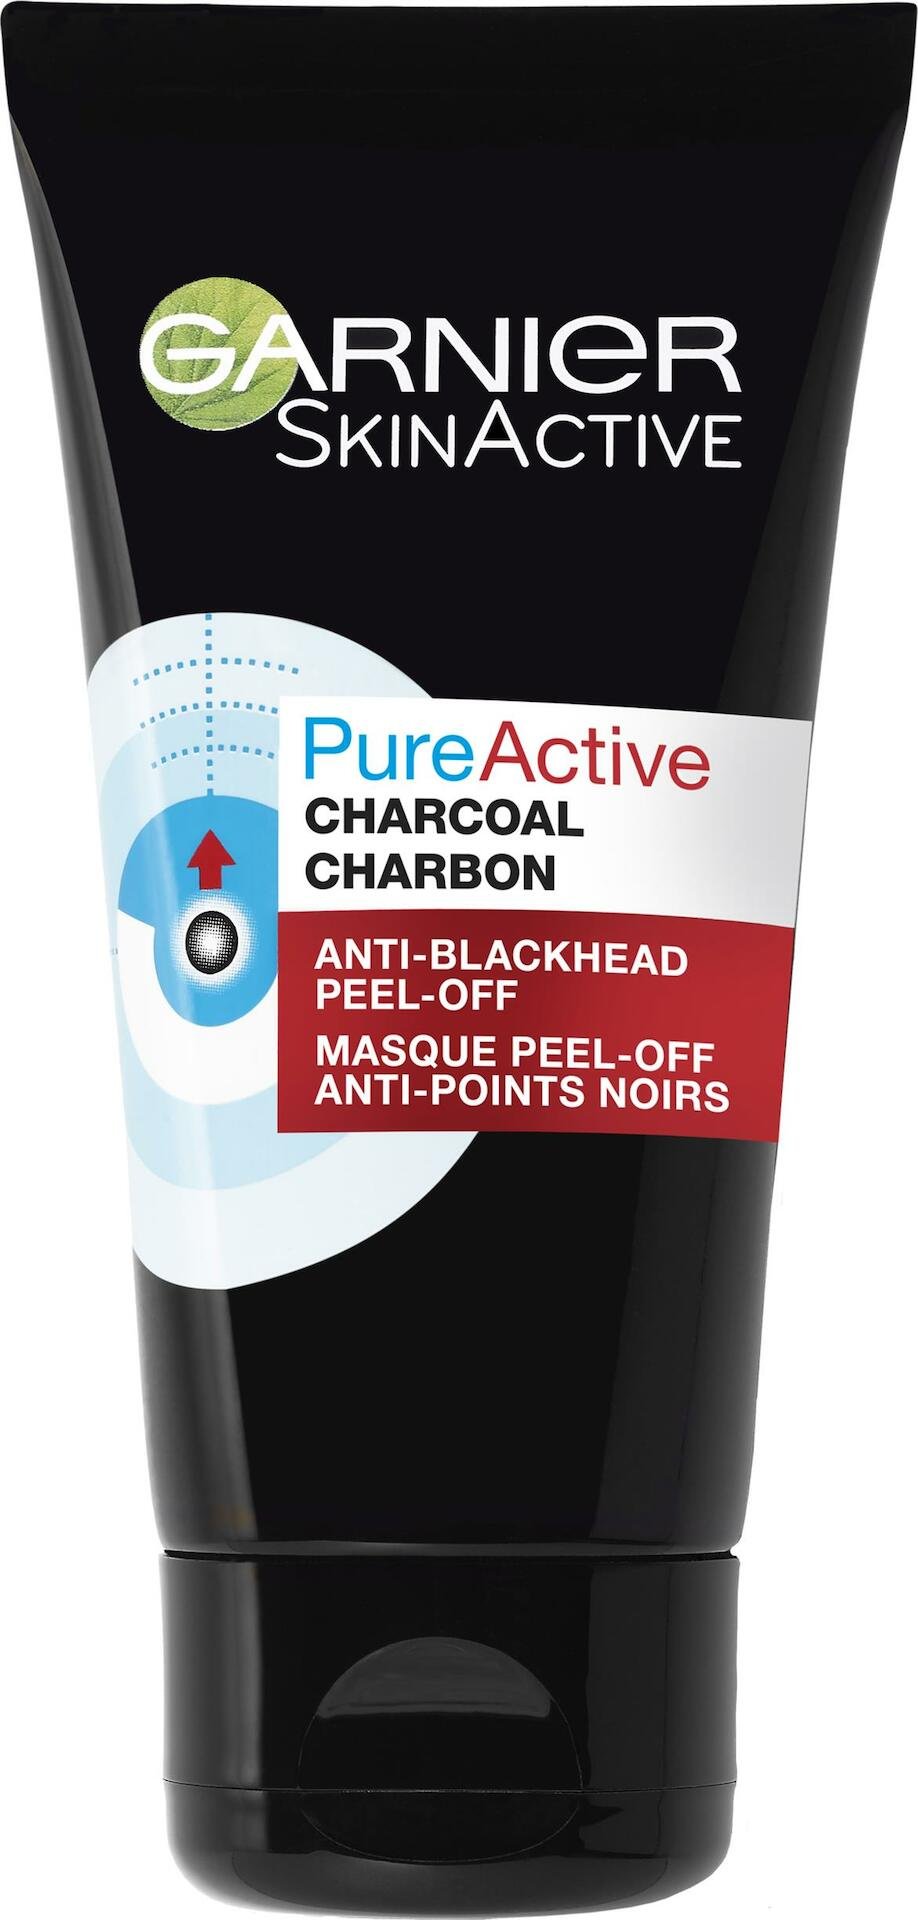 Garnier SkinActive PureActive Charcoal Peel-off 50 ml